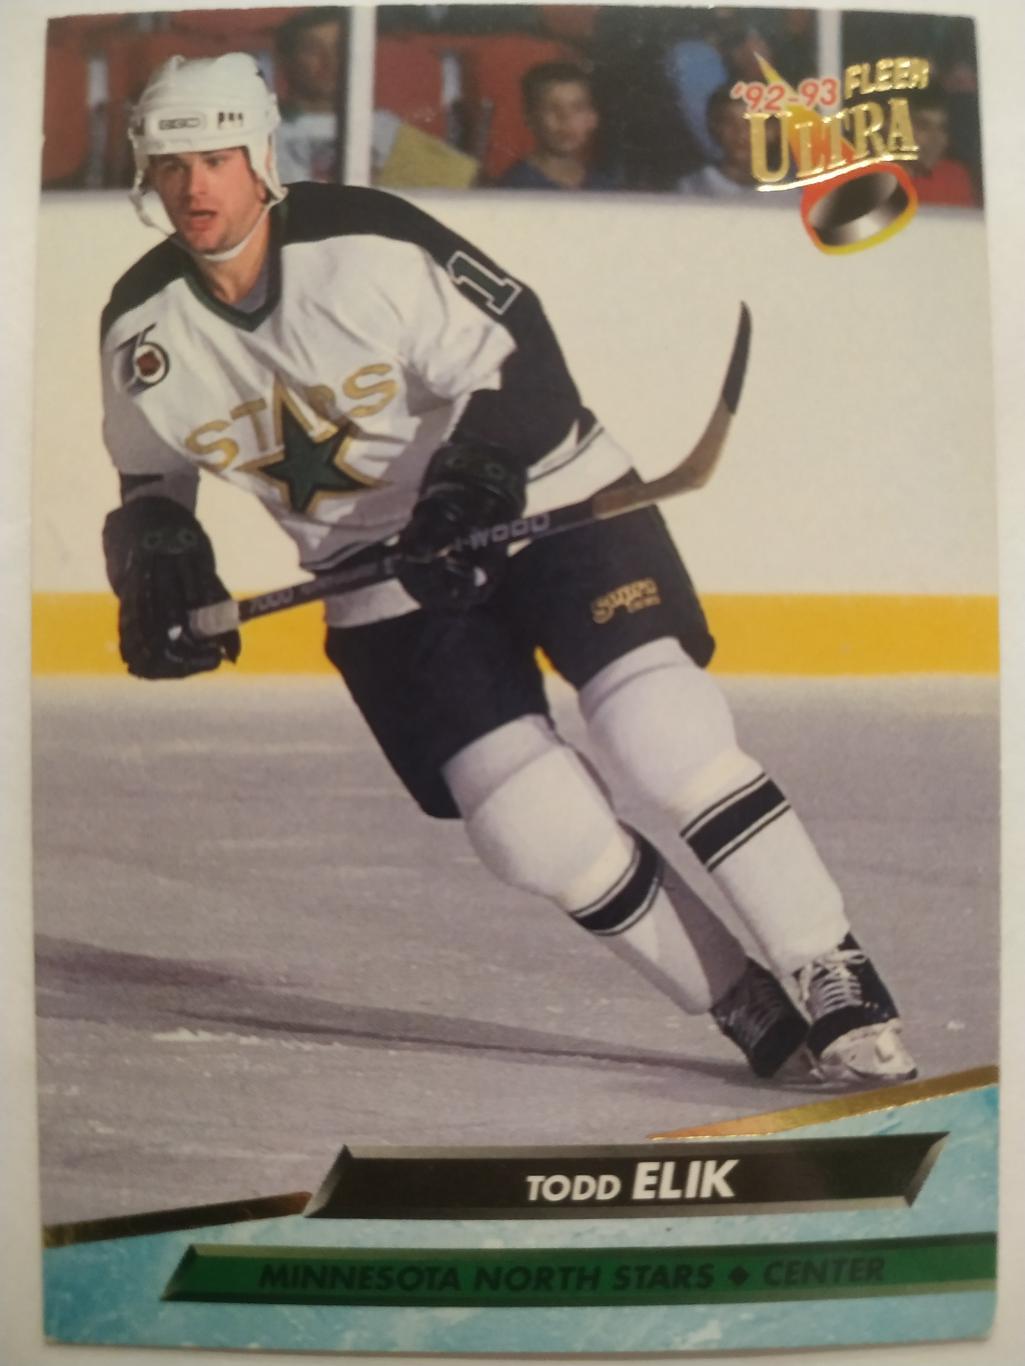 ХОККЕЙ КАРТОЧКА НХЛ FLEER ULTRA 1992-93 NHL TODD ELIK MINNESOTA #93